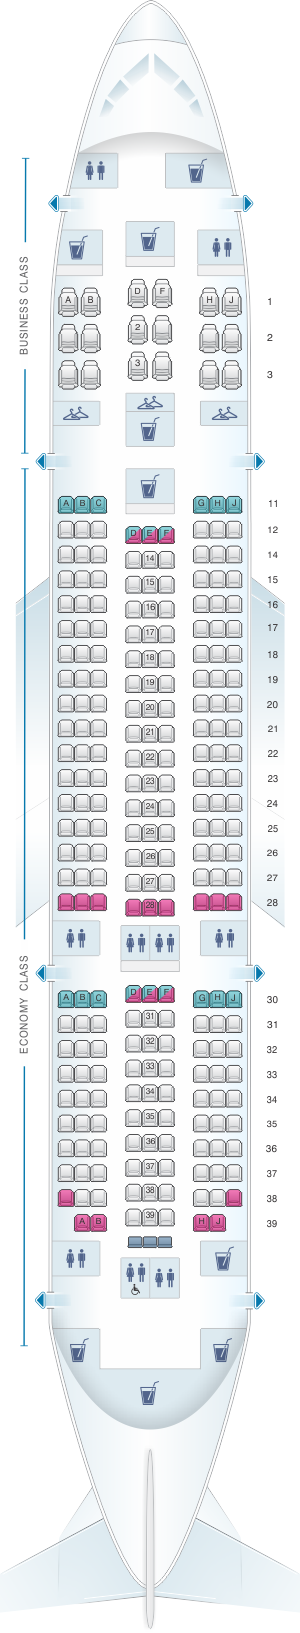 air india flight seating arrangement